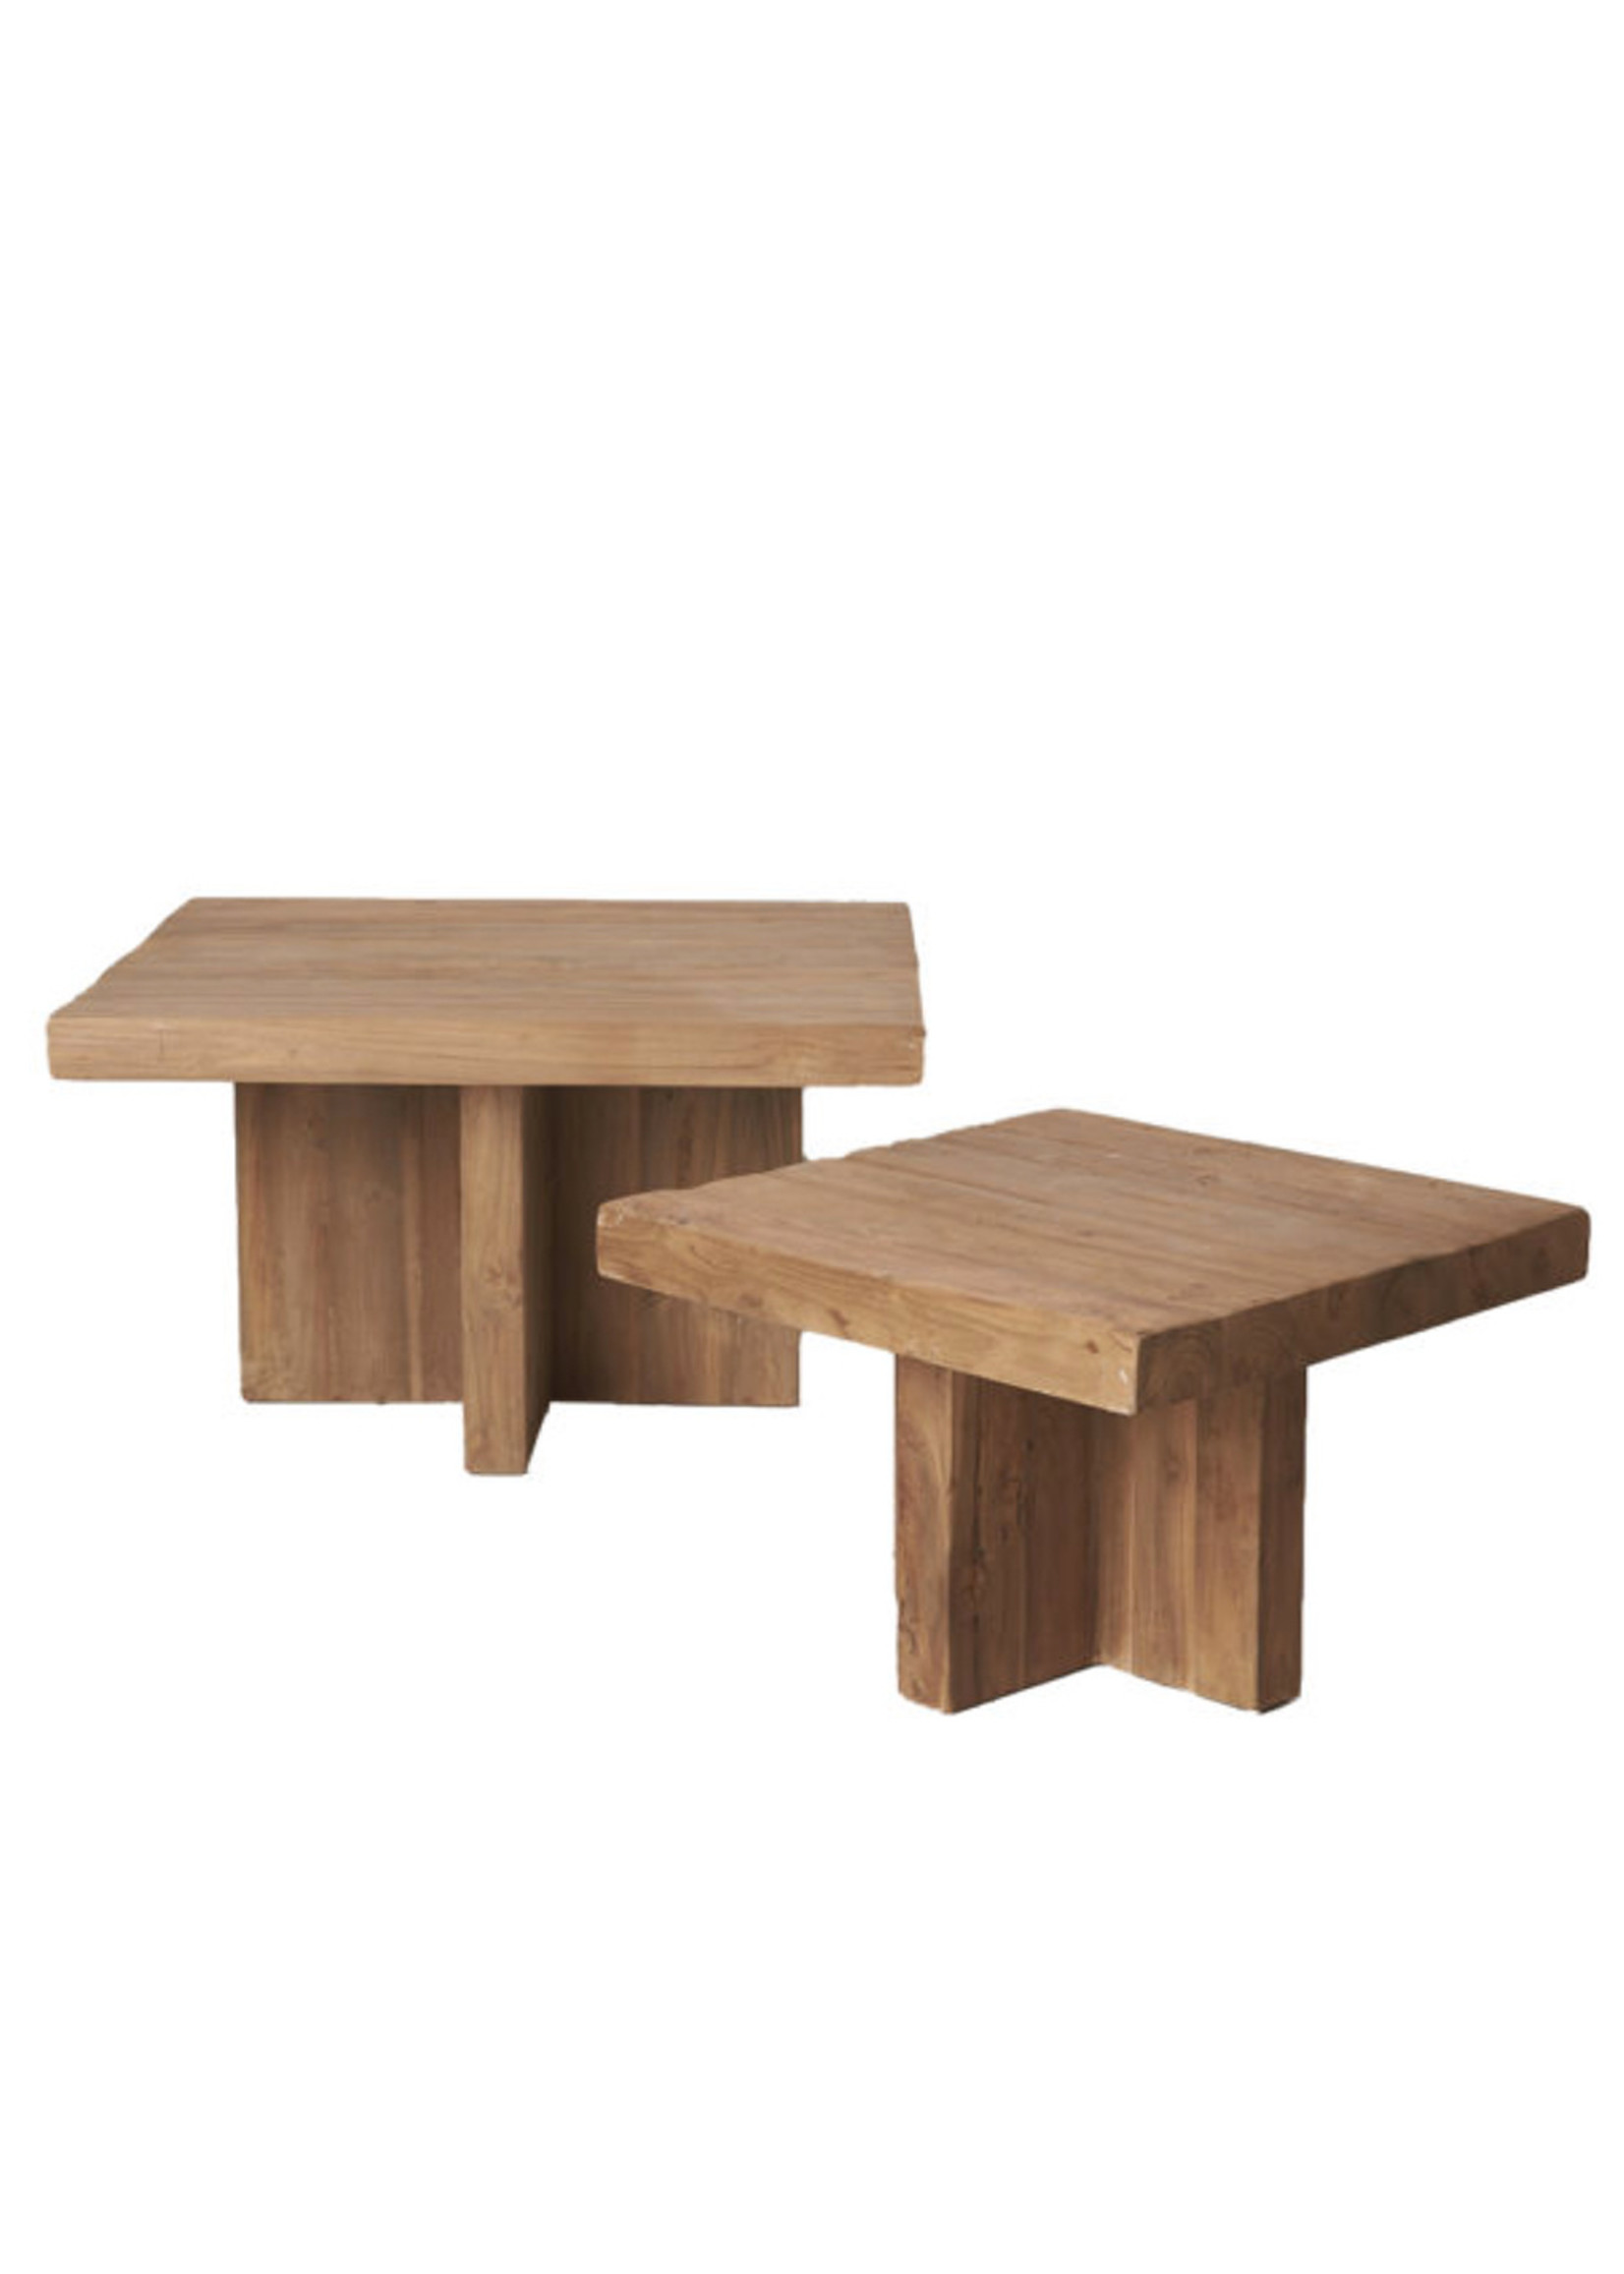 Rustic Square Table Medium